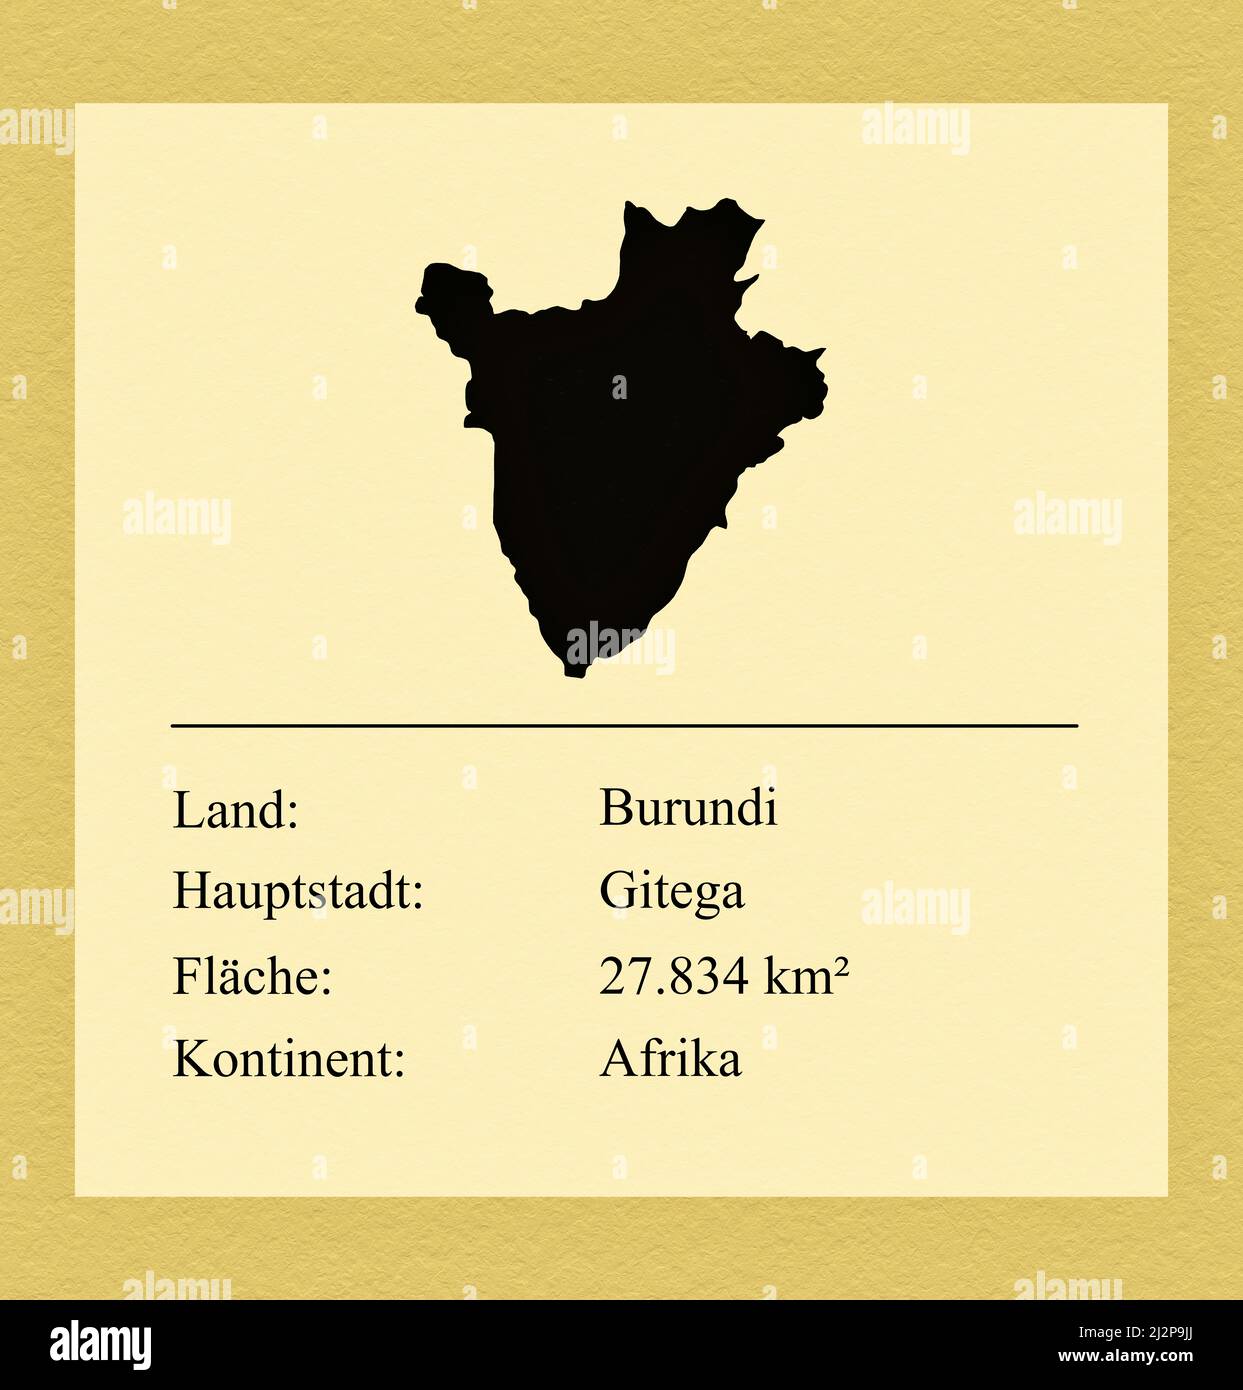 Umrisse des Landes Burundi, darunter ein kleiner Steckbrief mit Ländernamen, Hauptstadt, Fläche und Kontinent Stock Photo